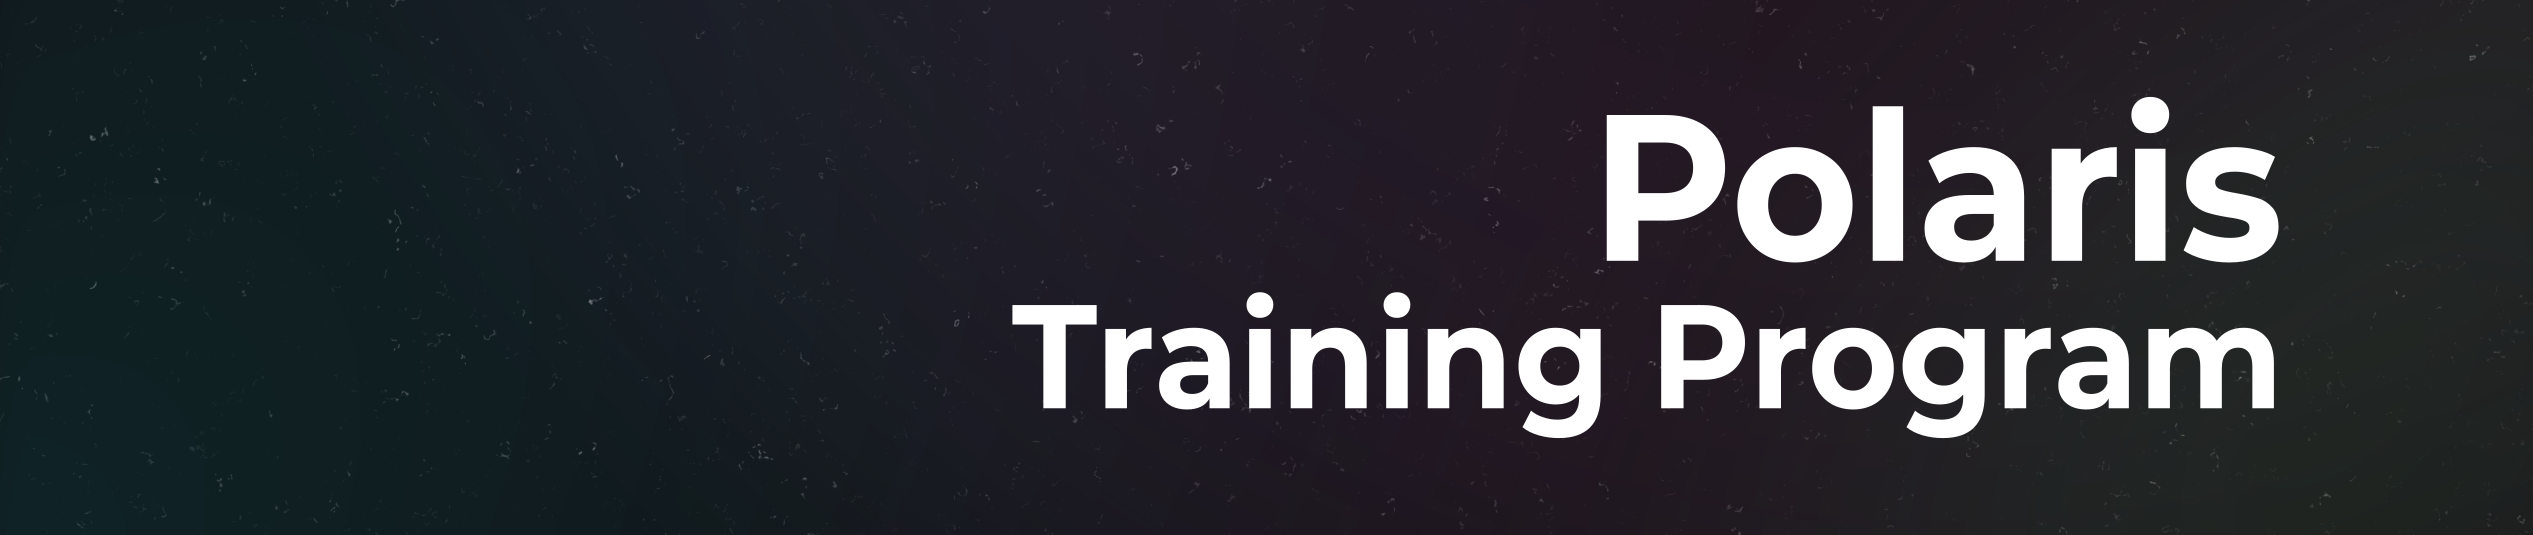 Polaris Training Program